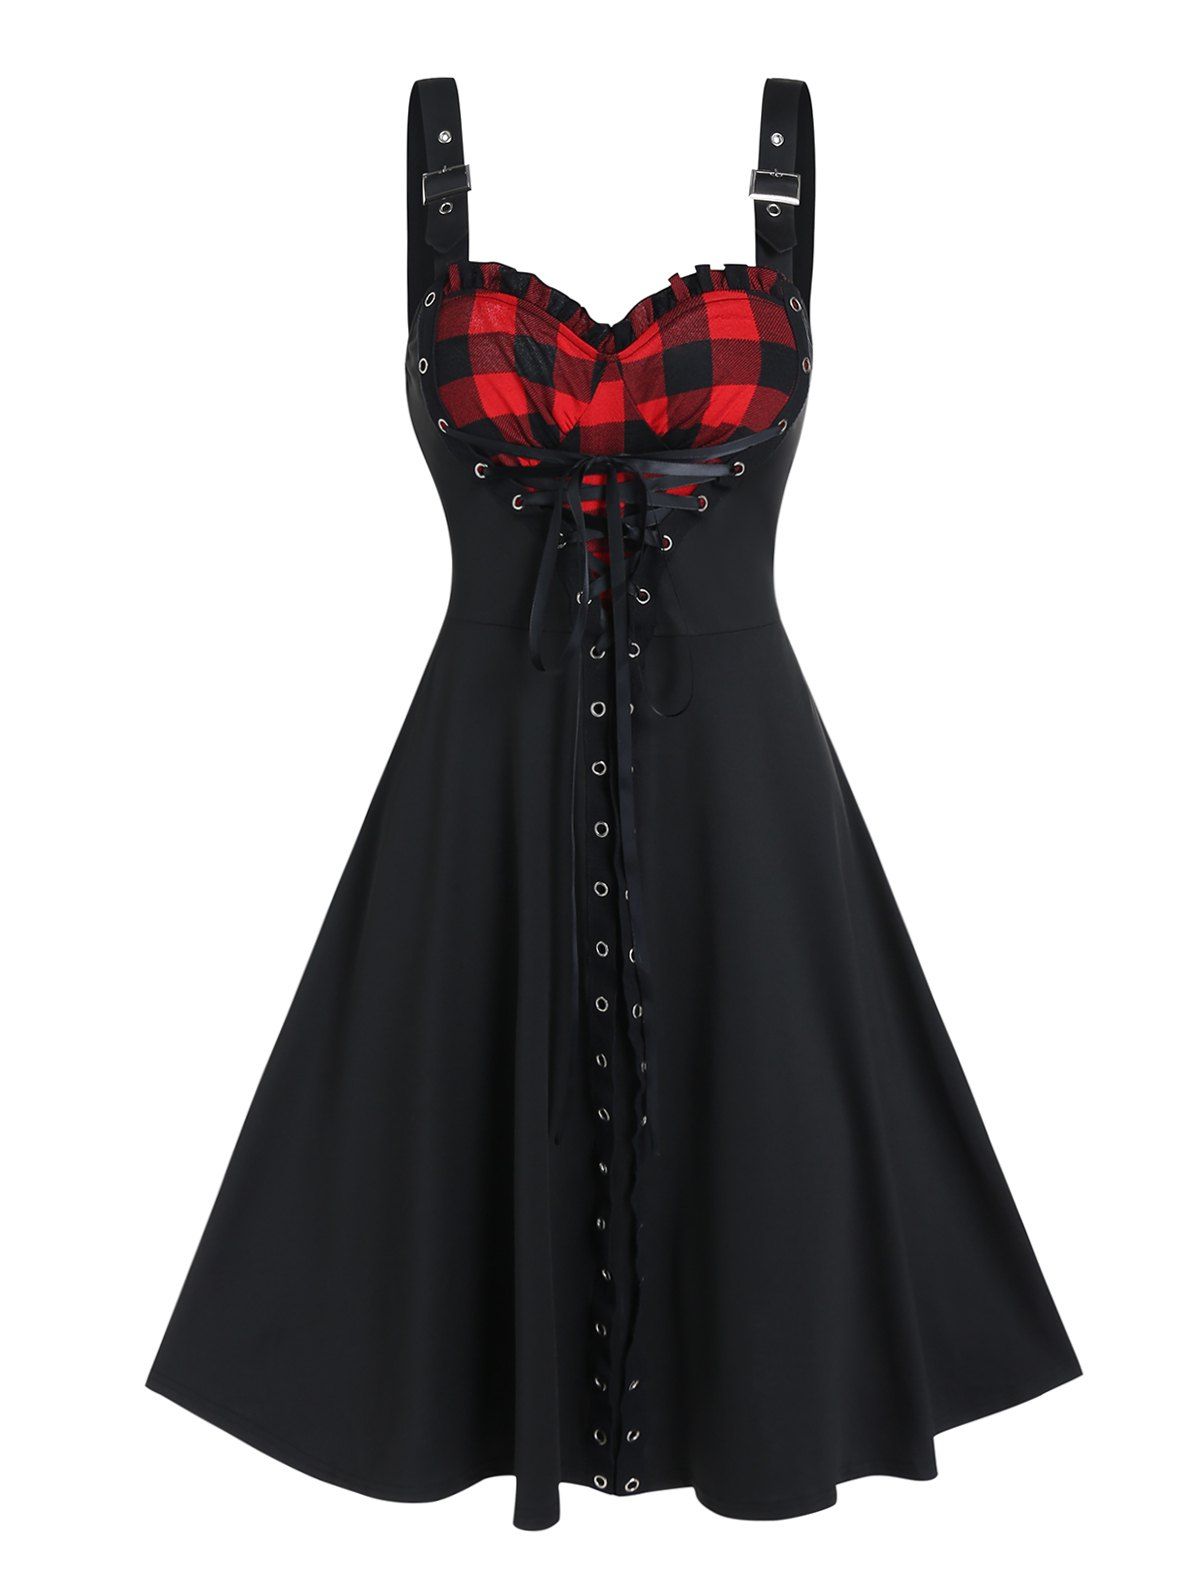 Gothic Dress Plaid Pattern Heart Shape Mini Dress Grommet Lace Up A Line Dress - BLACK XXXL